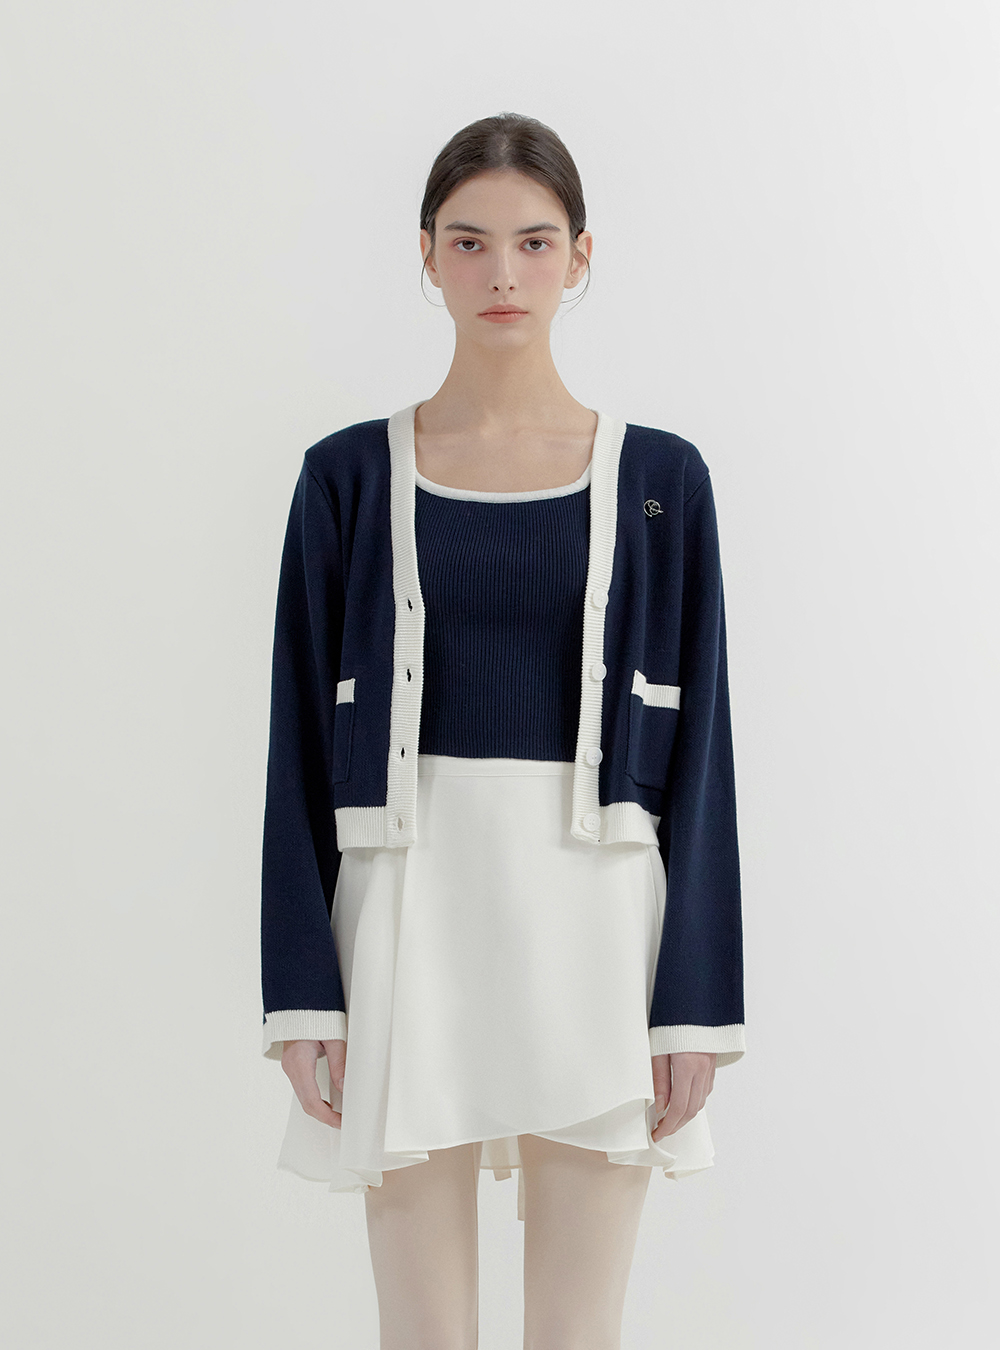 루이자 니트 슬리브리스 &amp; 카디건 세트  Luisa knit sleeveless &amp; cardigan set (2color)